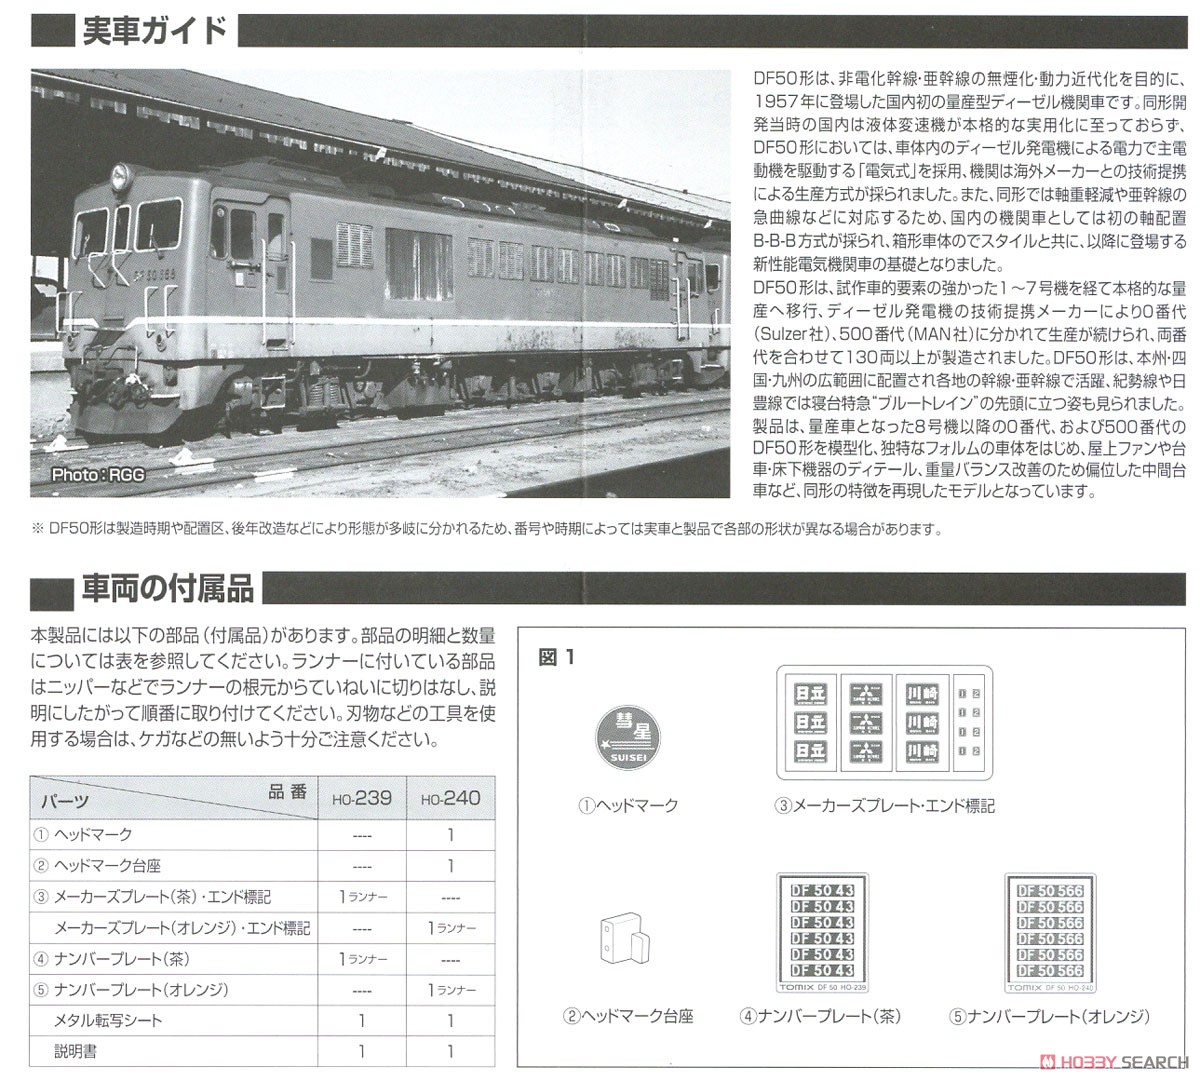 16番(HO) 国鉄 DF50形 ディーゼル機関車 (後期型・朱色・プレステージモデル) (鉄道模型) 解説1